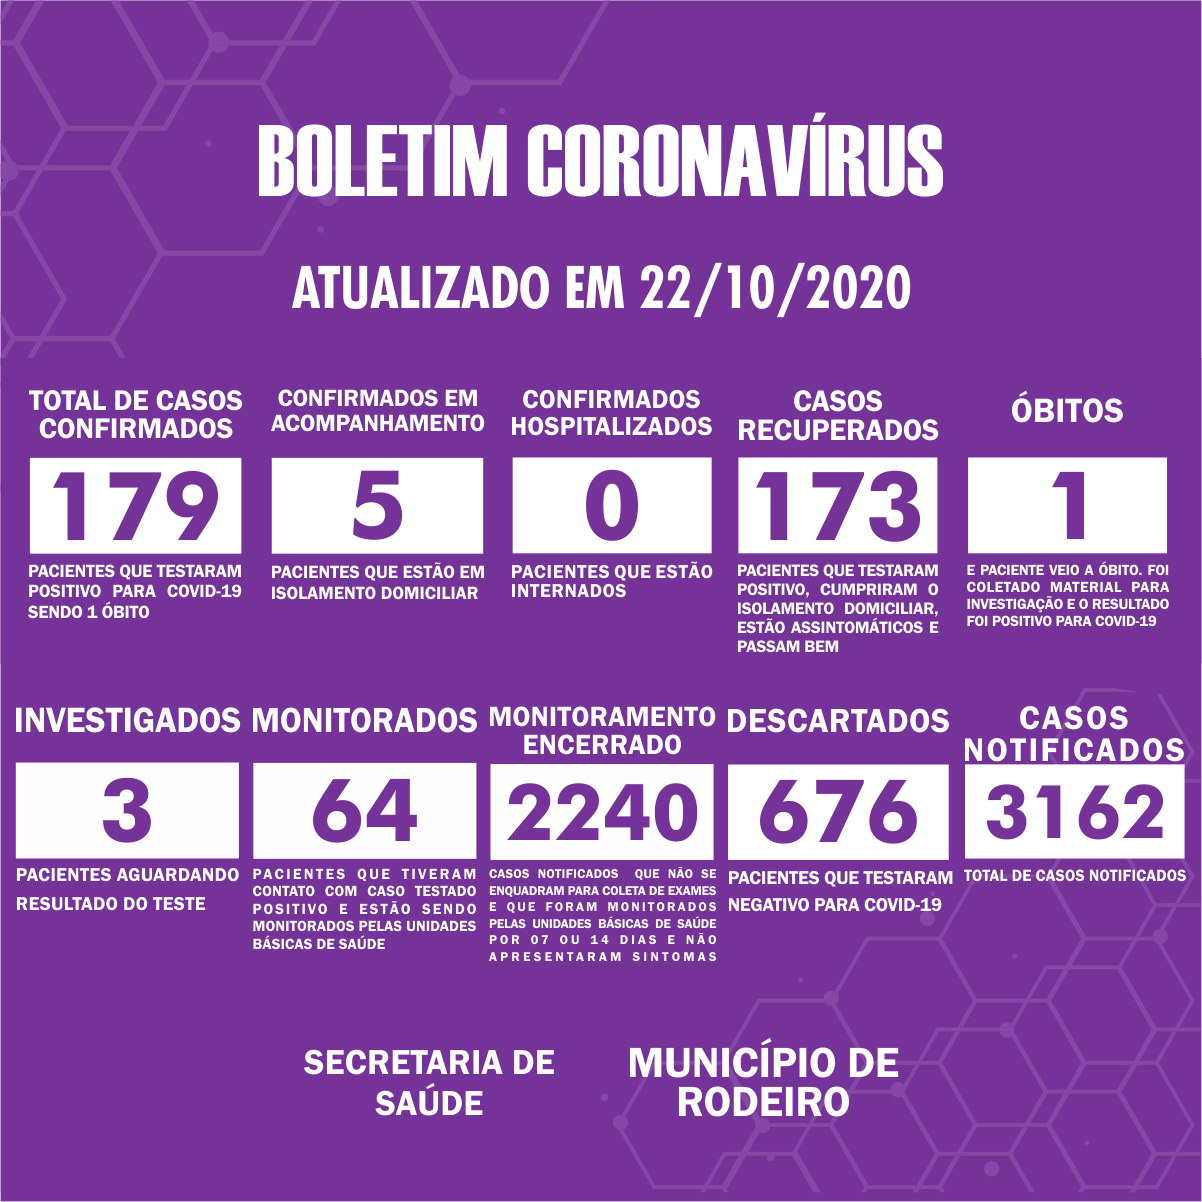 Boletim Epidemiológico do Município de Rodeiro sobre coronavírus, atualizado em 22/10/2020